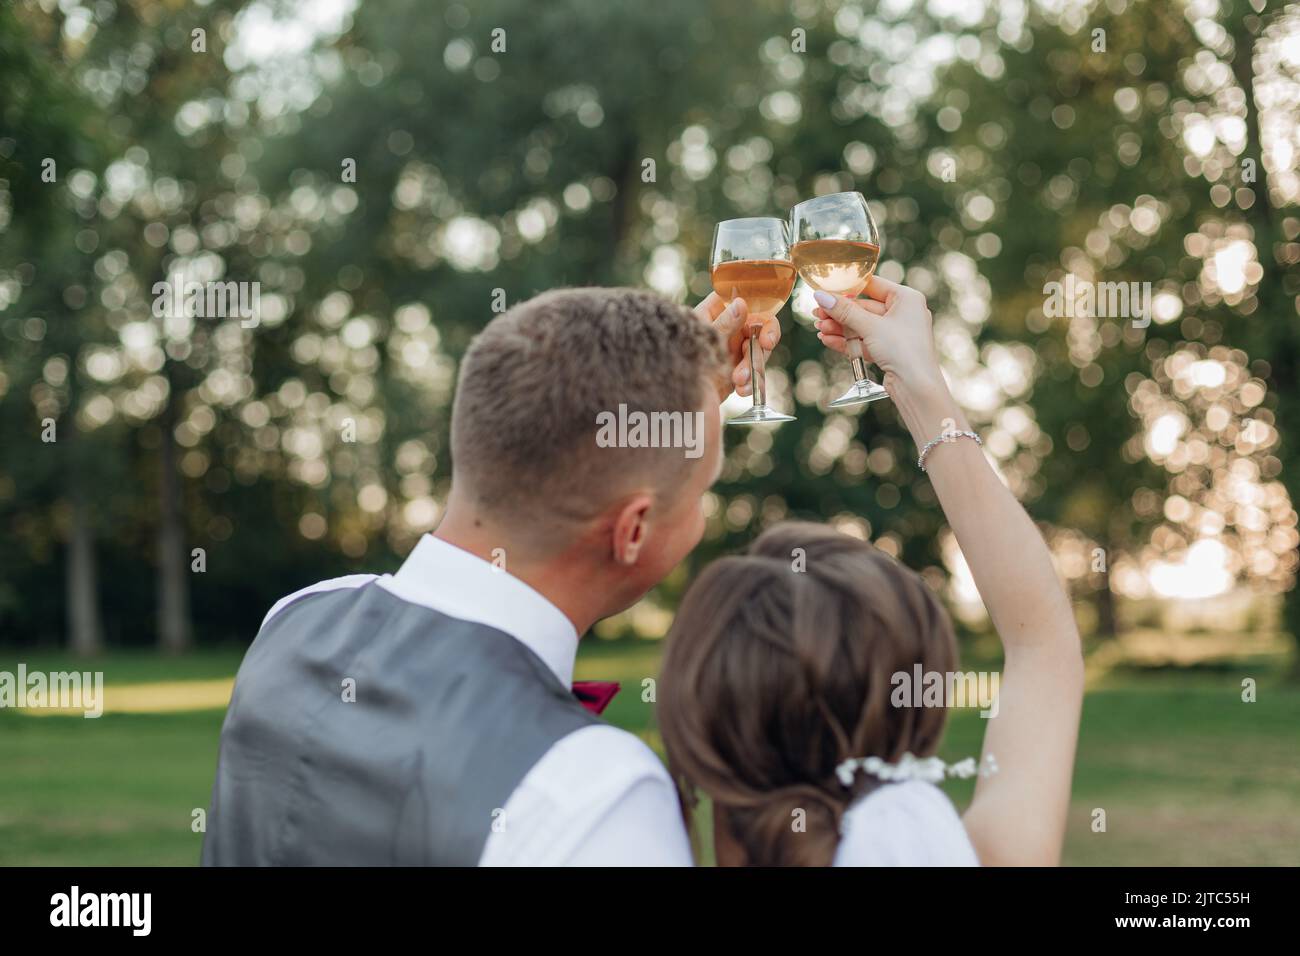 Freuen Sie sich auf ein glückliches verheiratetes Brautpaar im Hochzeitskleid und einen Bräutigam im Anzug, der zusammen Sekt trinkt Stockfoto